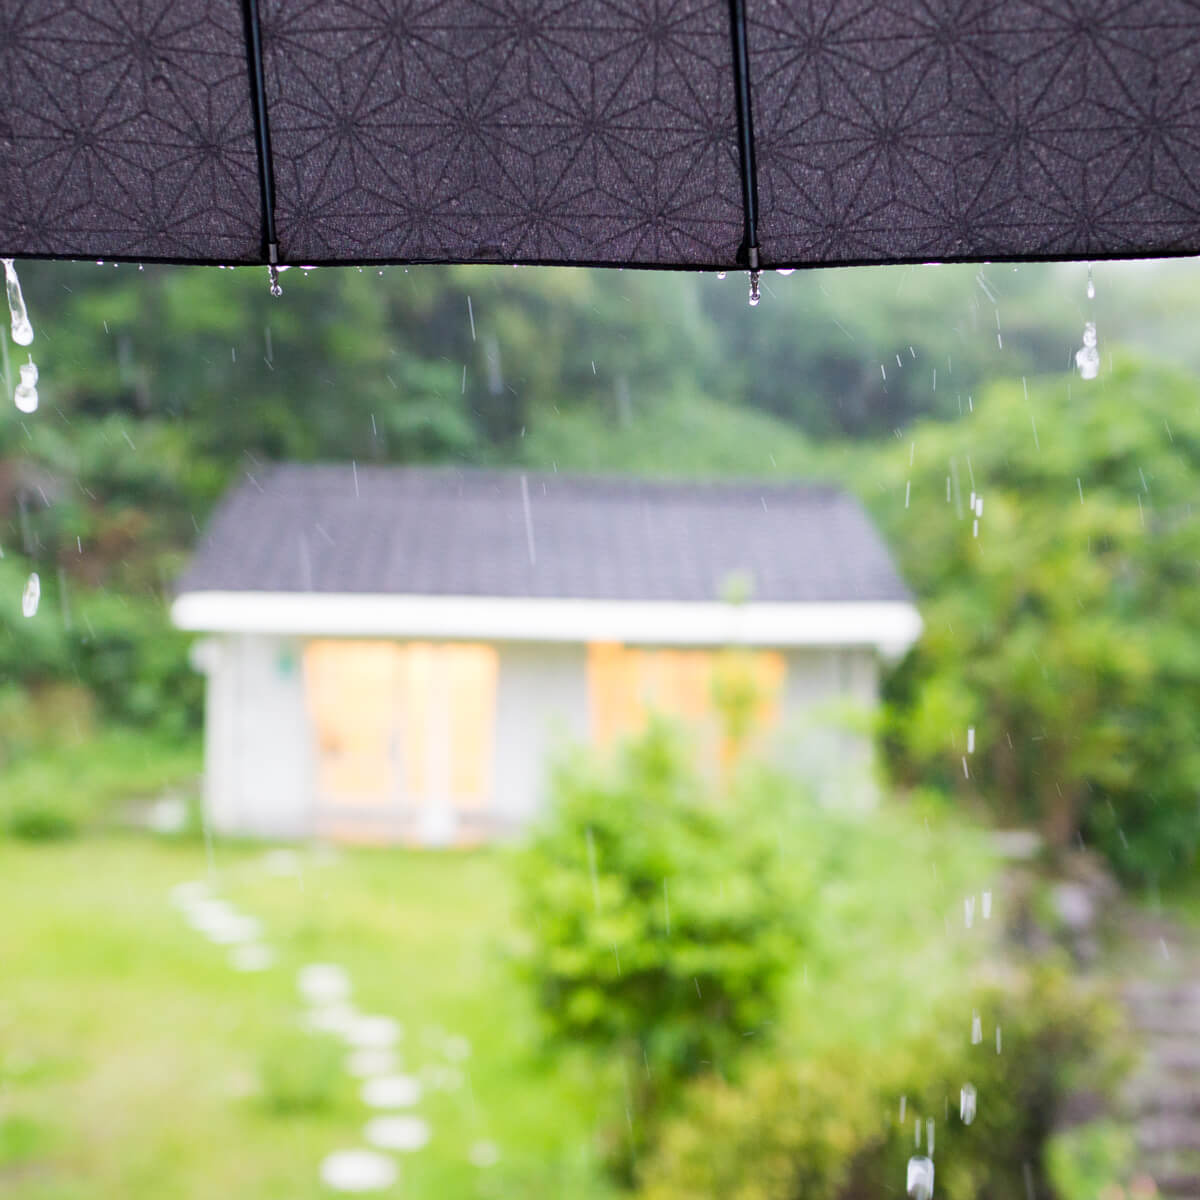 雨のリズム、しずくの指輪！  今日も屋久島にありがとう。